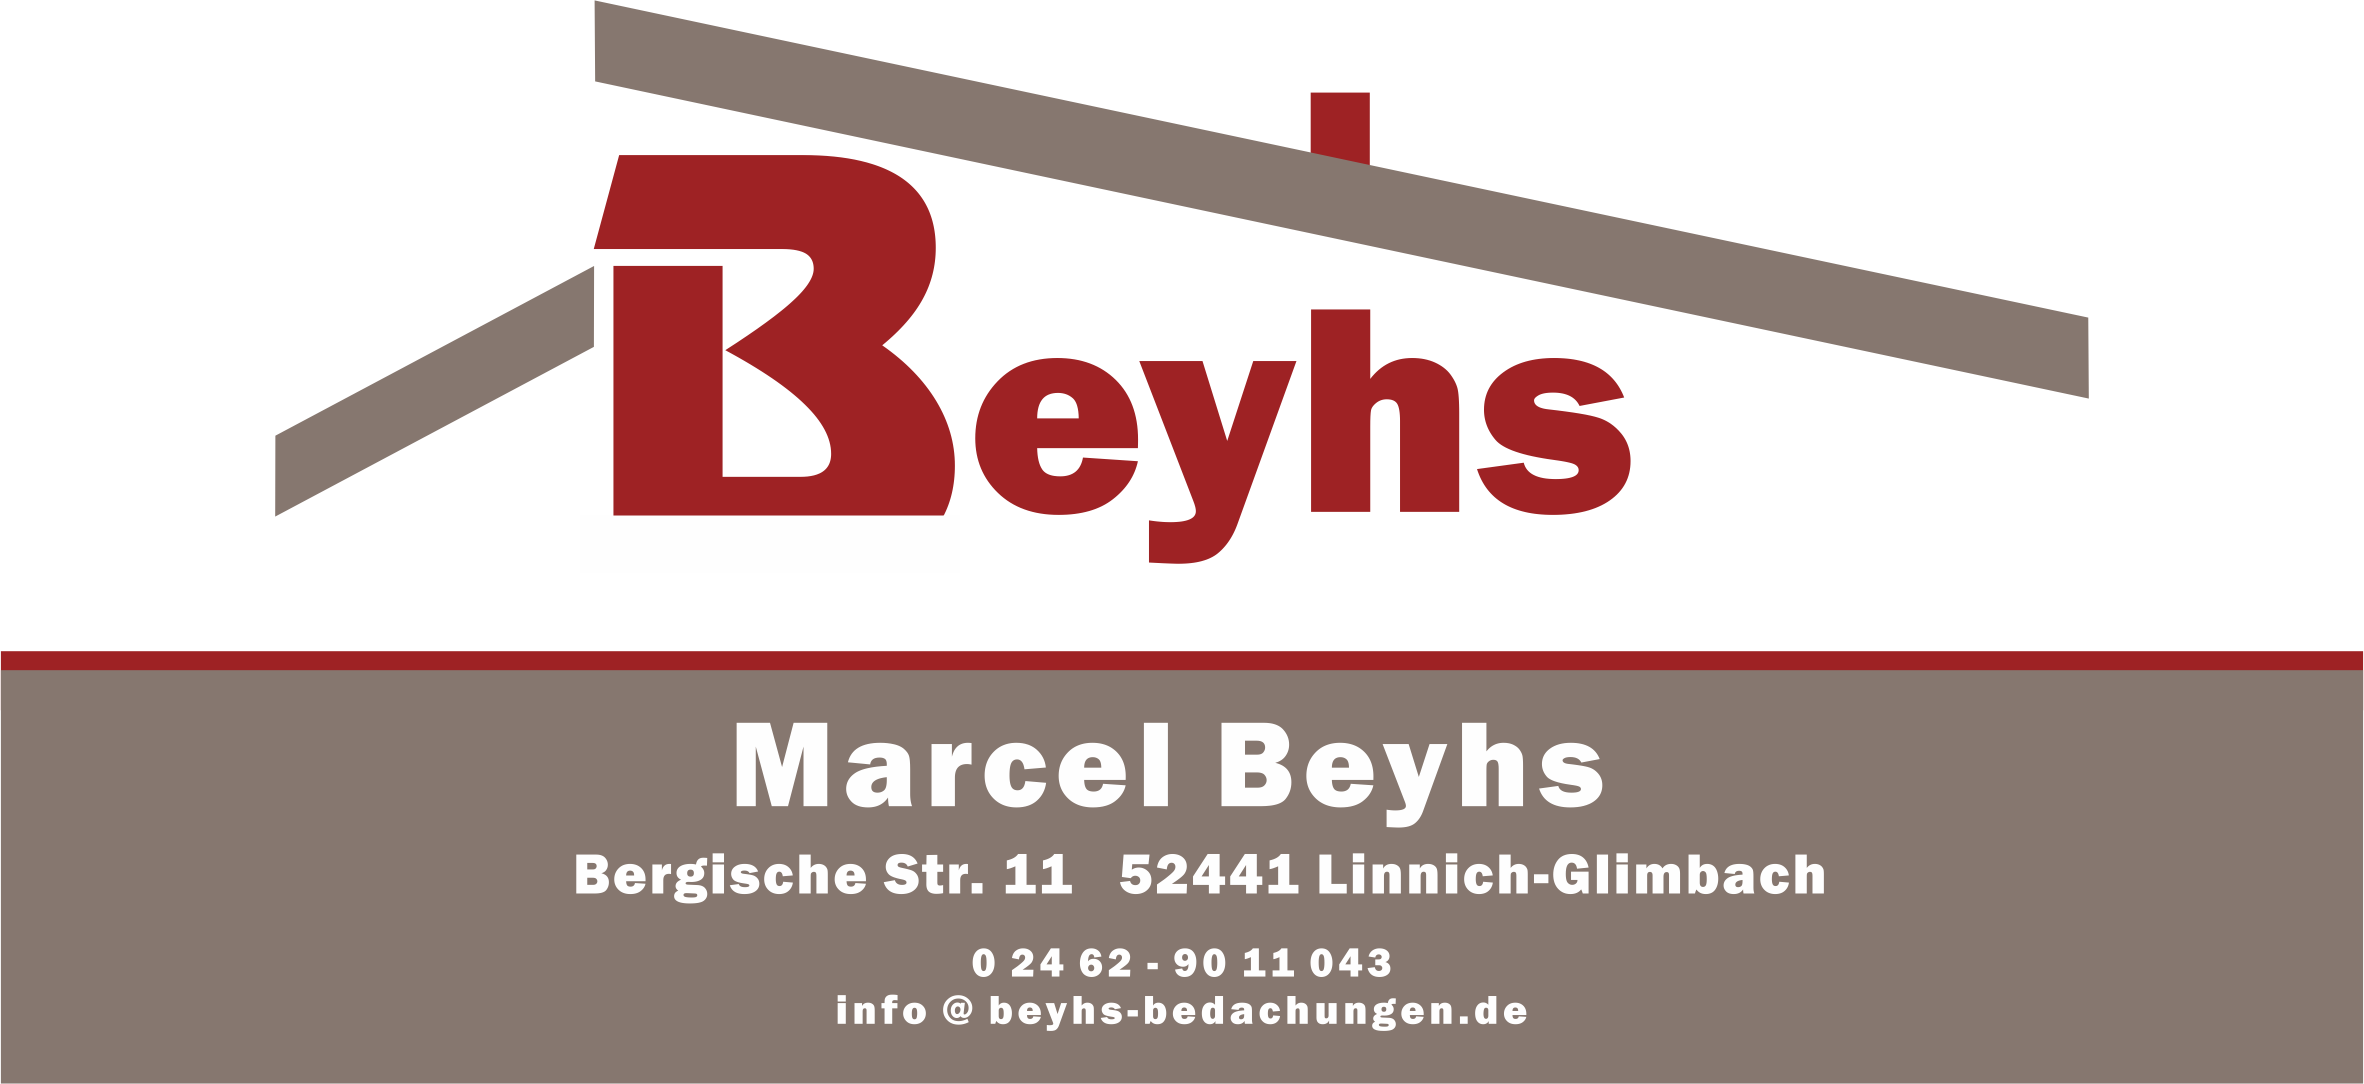 Logo Beyhs-Bedachungen